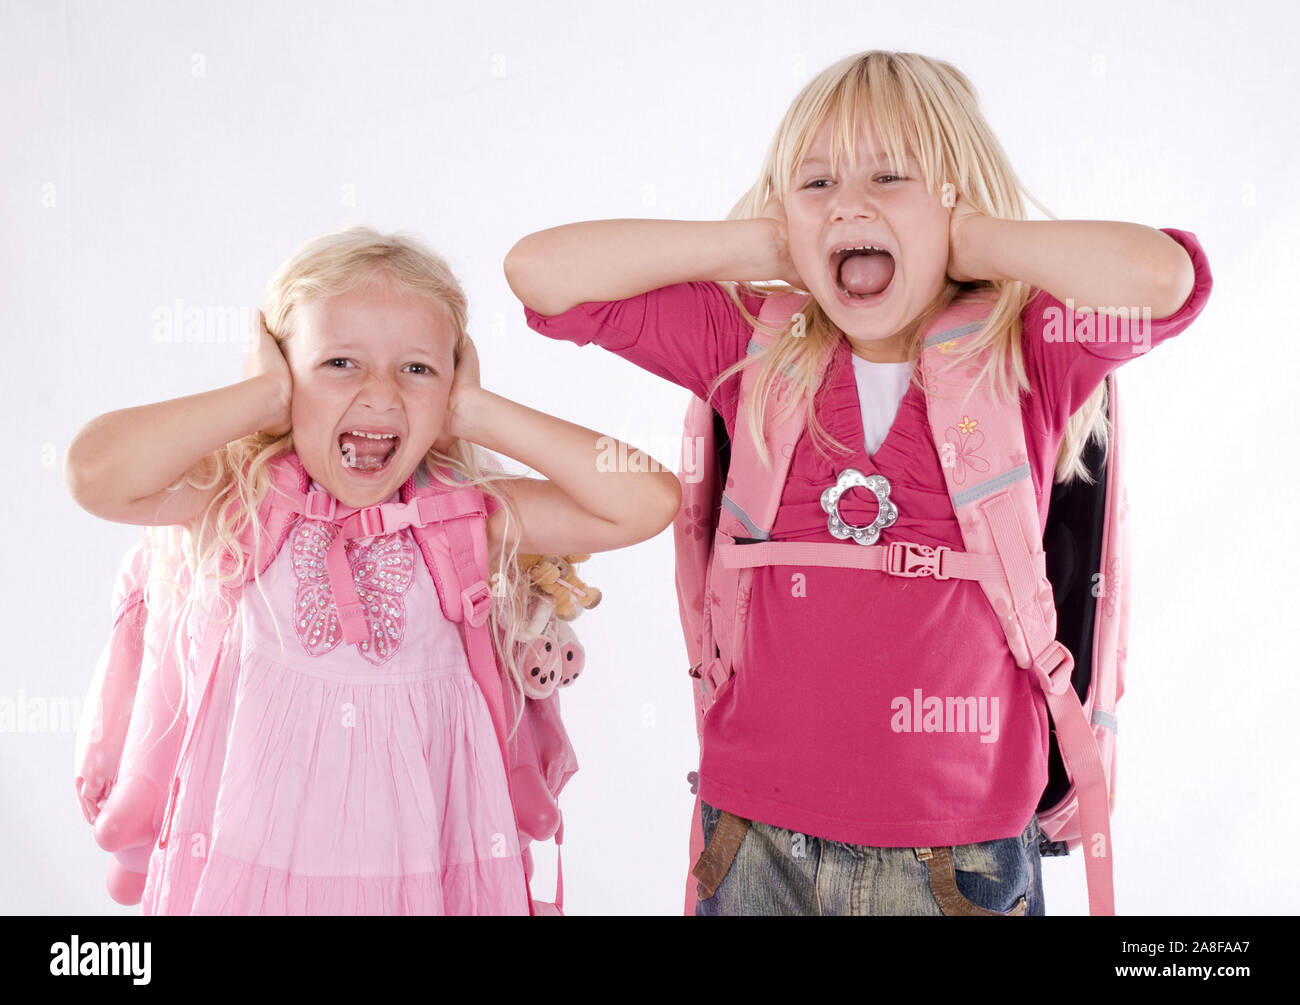 Zwei Mädchen, blonde, 6, 7, Ans, halten sich die Ohren, zu Schreien, M.:Oui Banque D'Images